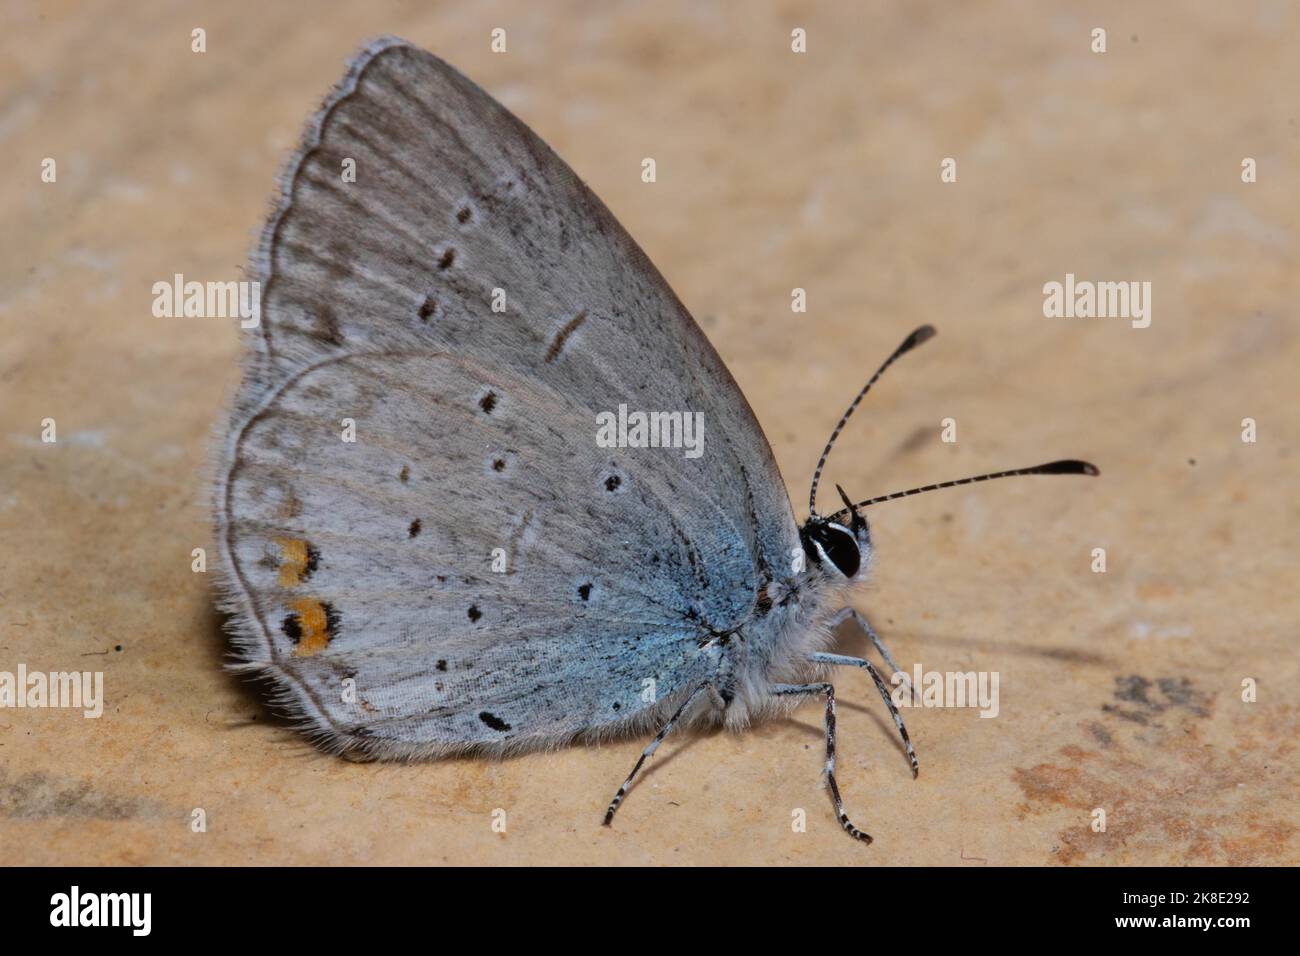 Mariposa azul de cola corta con alas cerradas sentadas sobre losa de piedra vista a la derecha Foto de stock